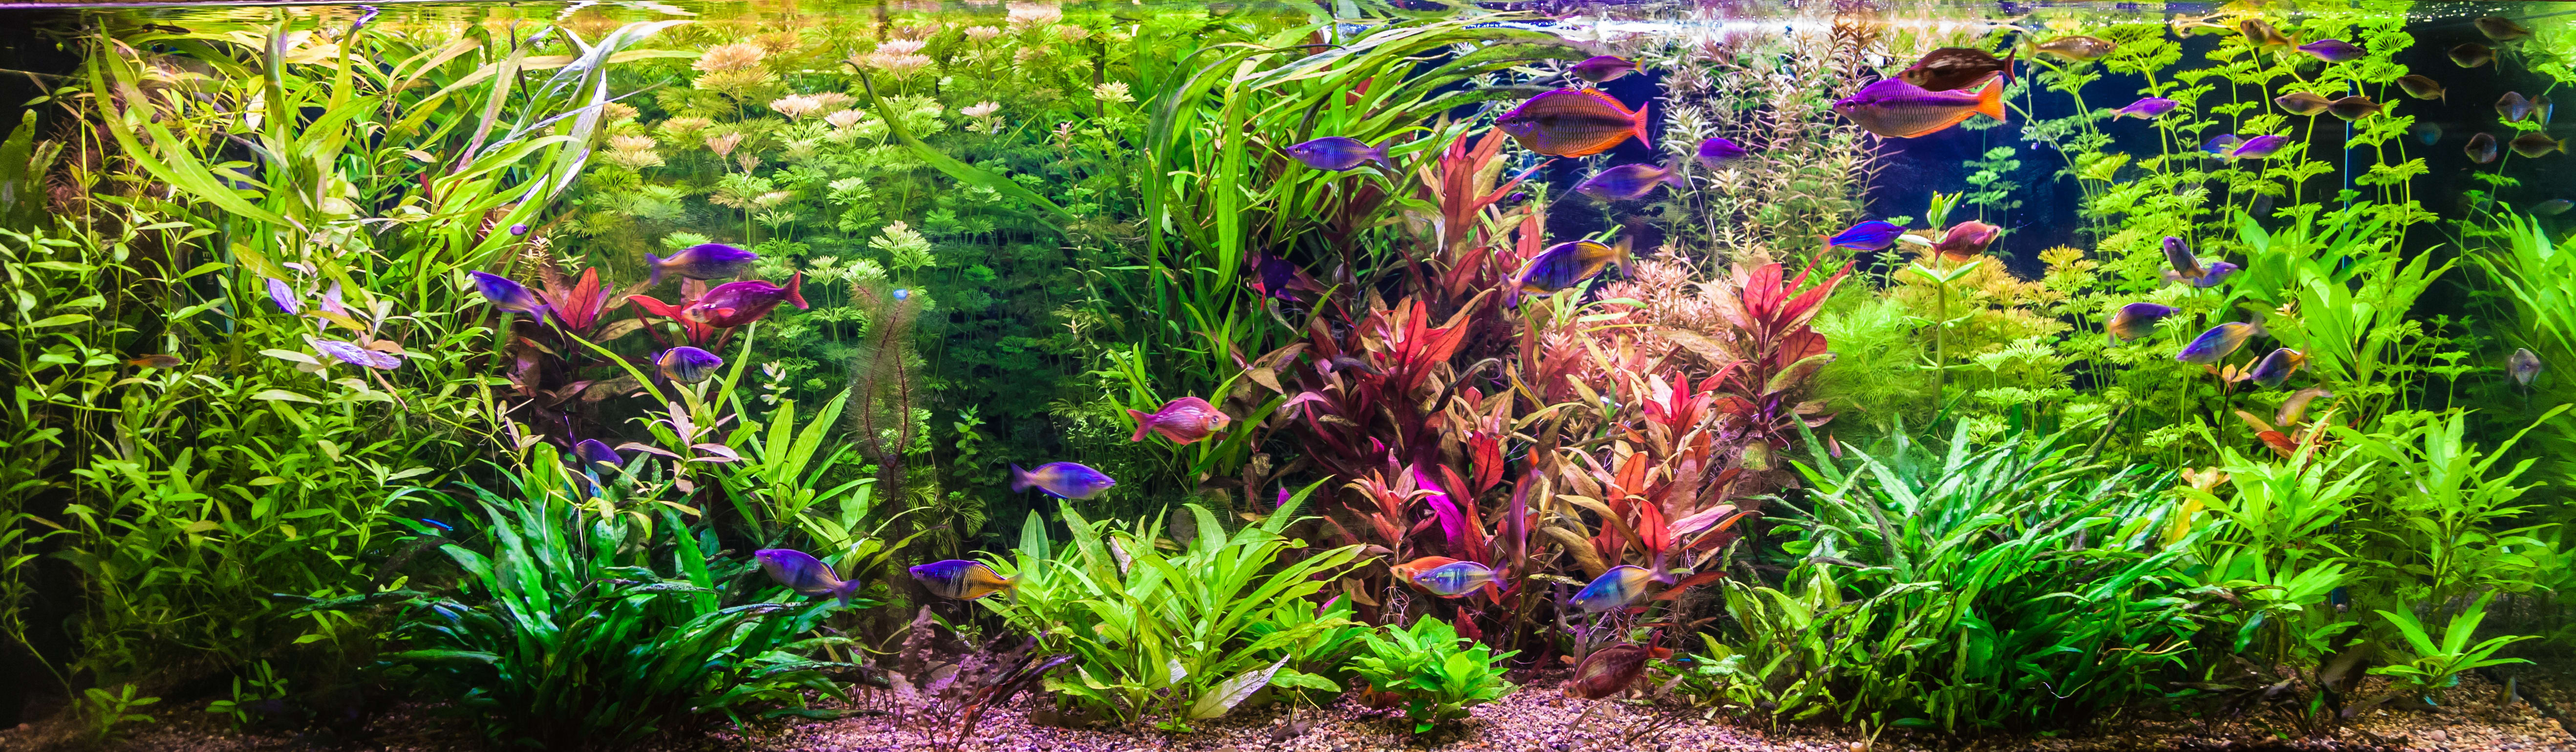 Top Picks for Live Aquarium Plants at Petco